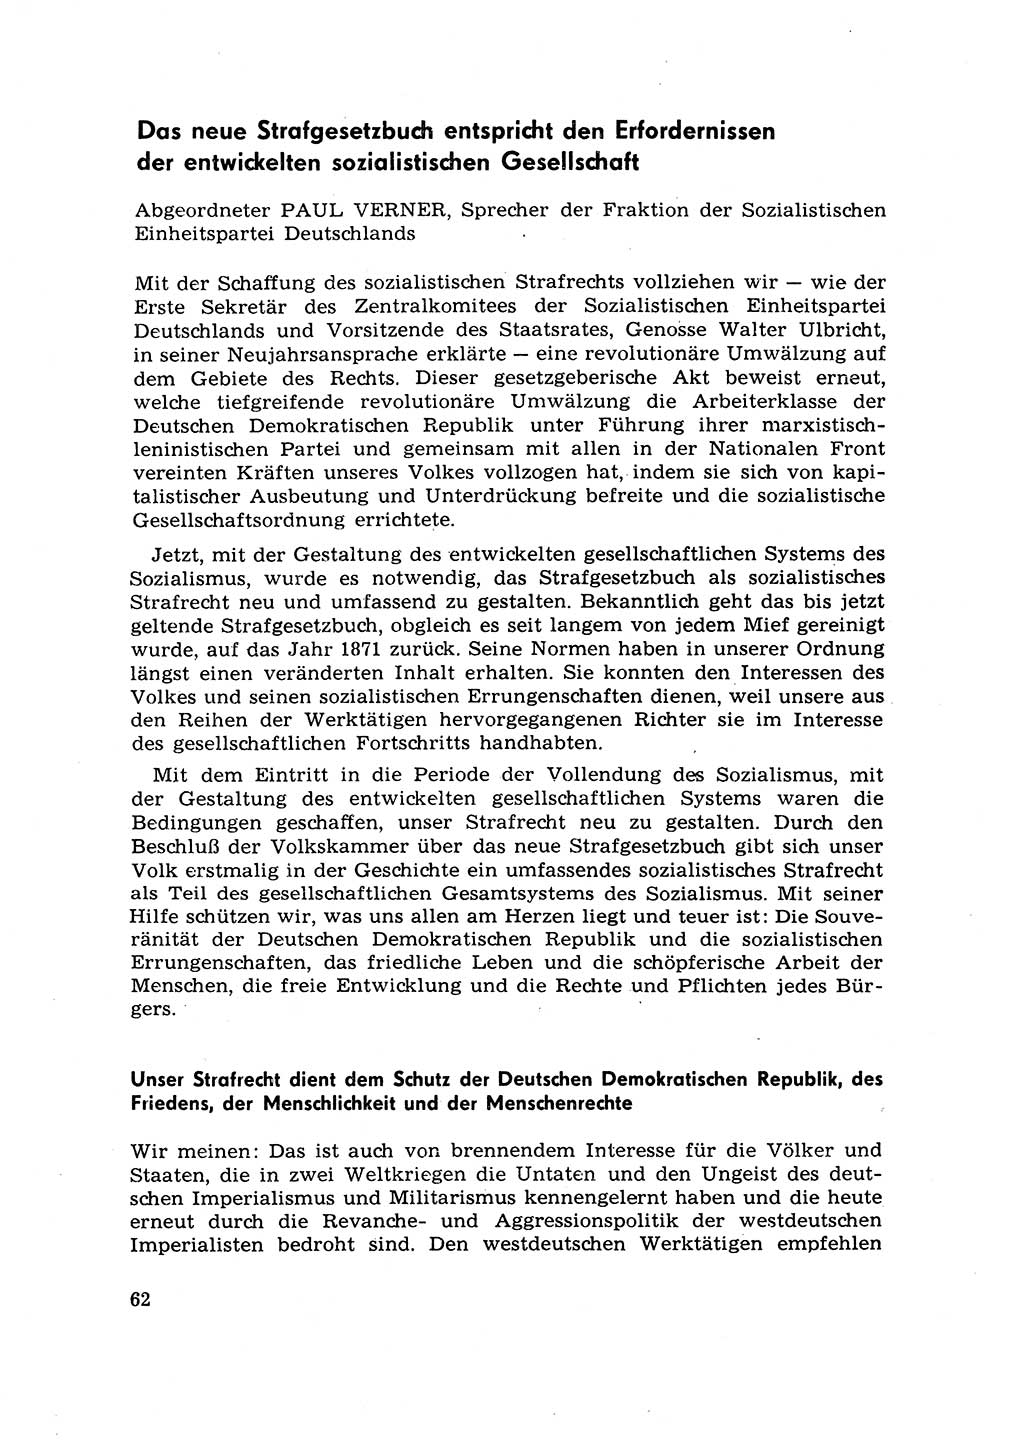 Strafrecht [Deutsche Demokratische Republik (DDR)] 1968, Seite 62 (Strafr. DDR 1968, S. 62)